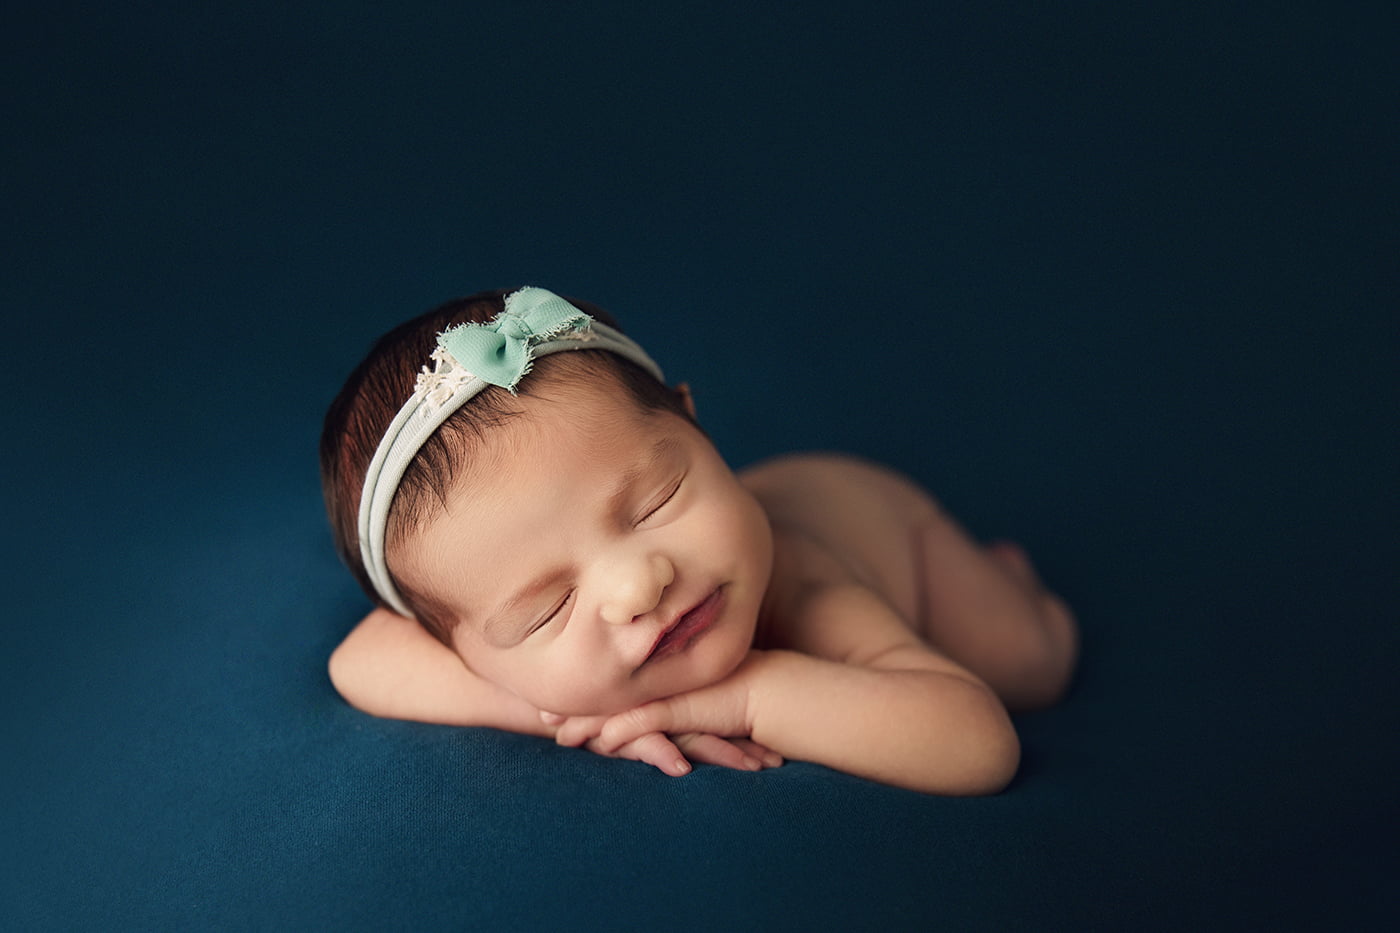 sedinta-foto-nou-nascut-bebe-copii-bucuresti-pret-newborn-mvphotography-madalina-vasile-karina